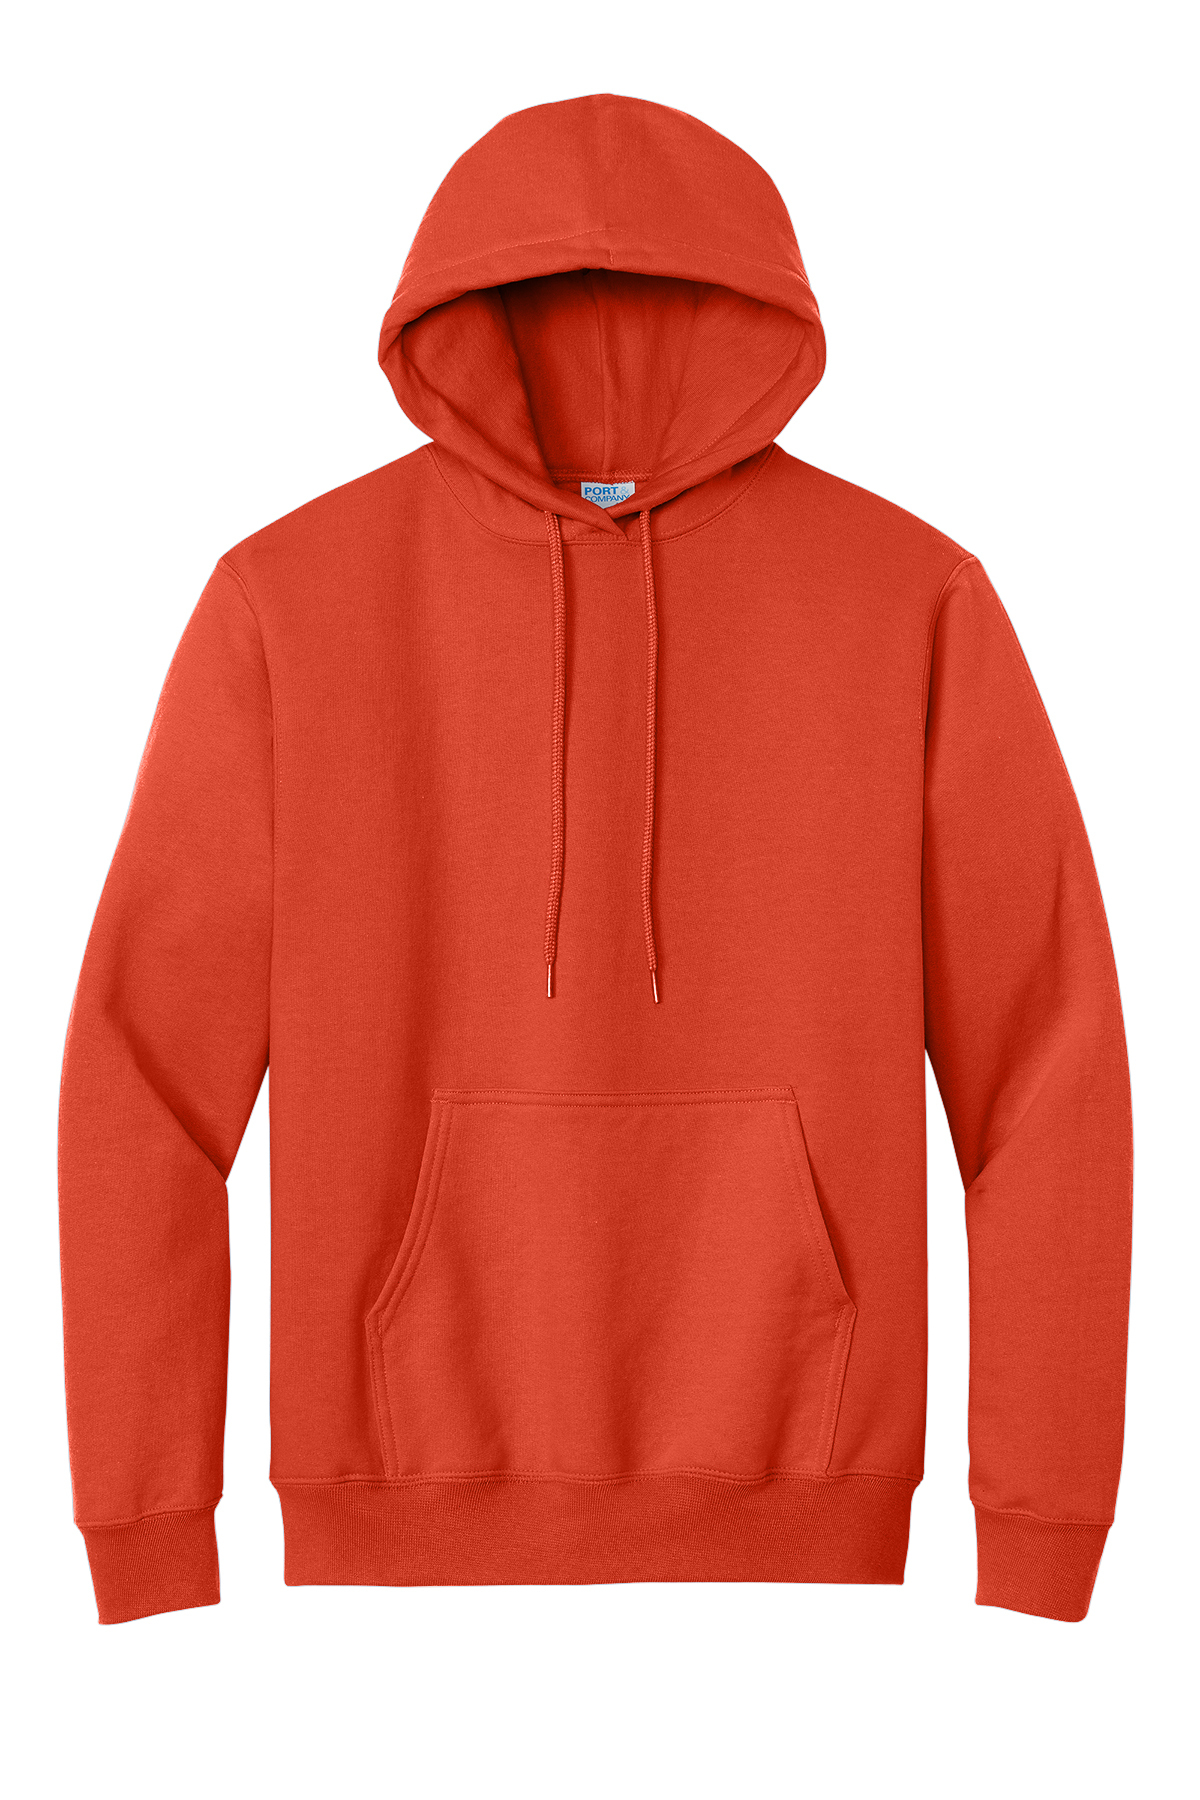  Maroon Cotton Blend Sweatshirts Hoodies Pack Of 1